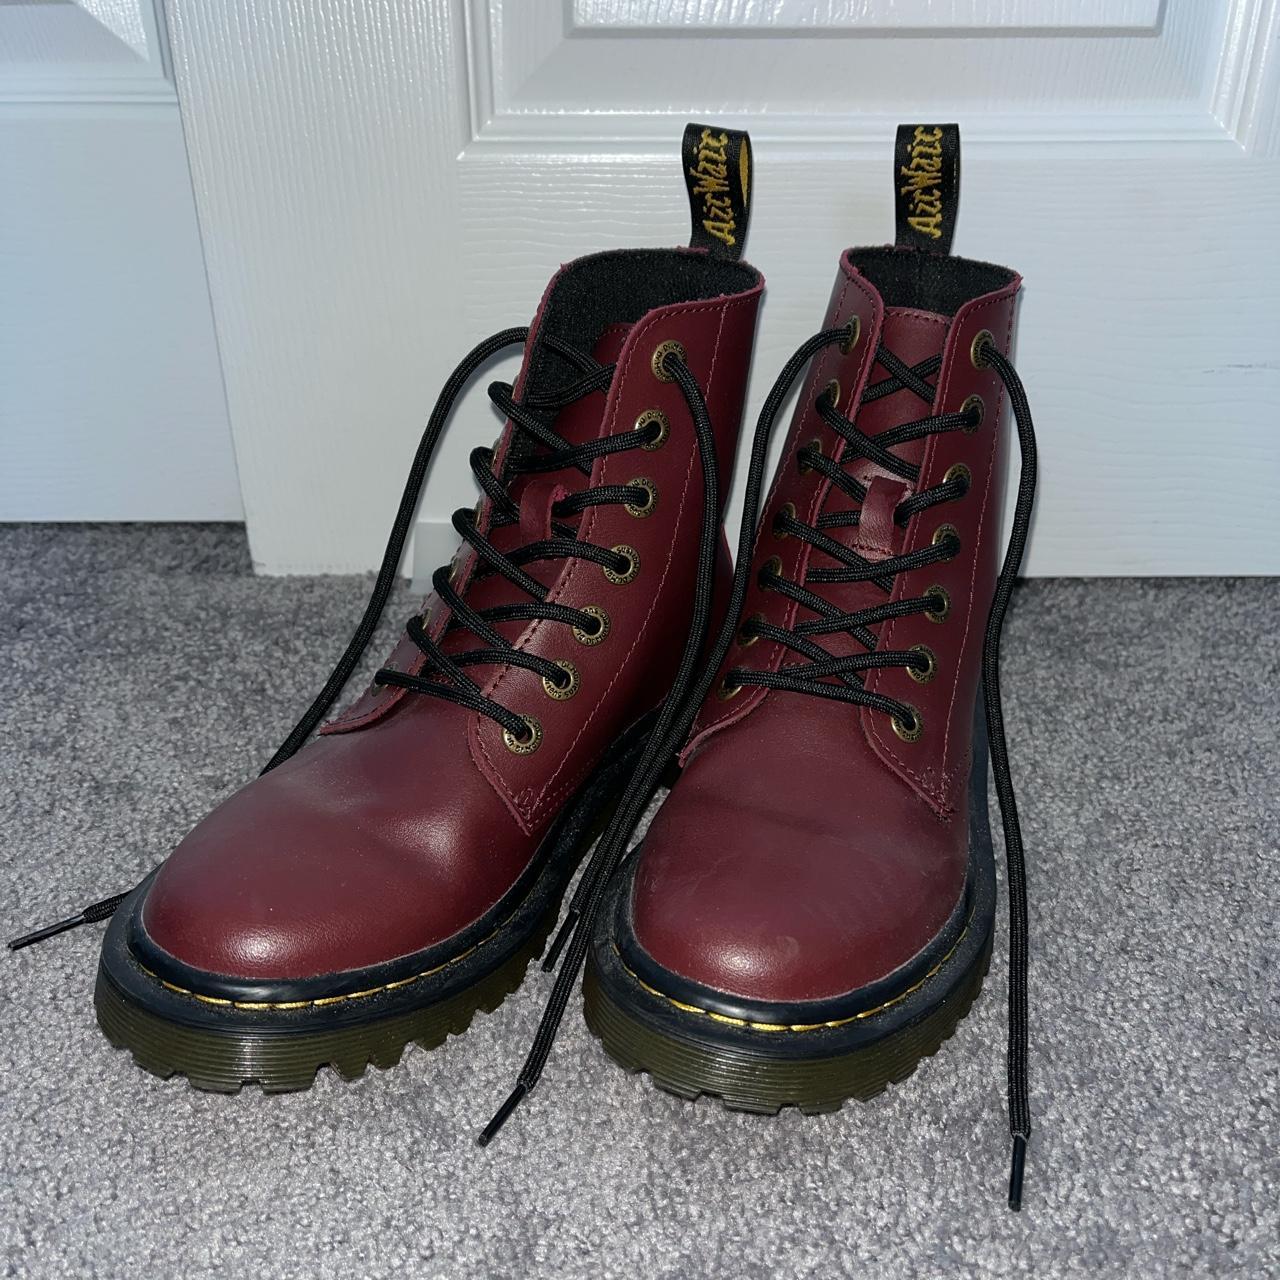 Doc Marten Luana boots in Maroon Size 6 US Size 4... - Depop